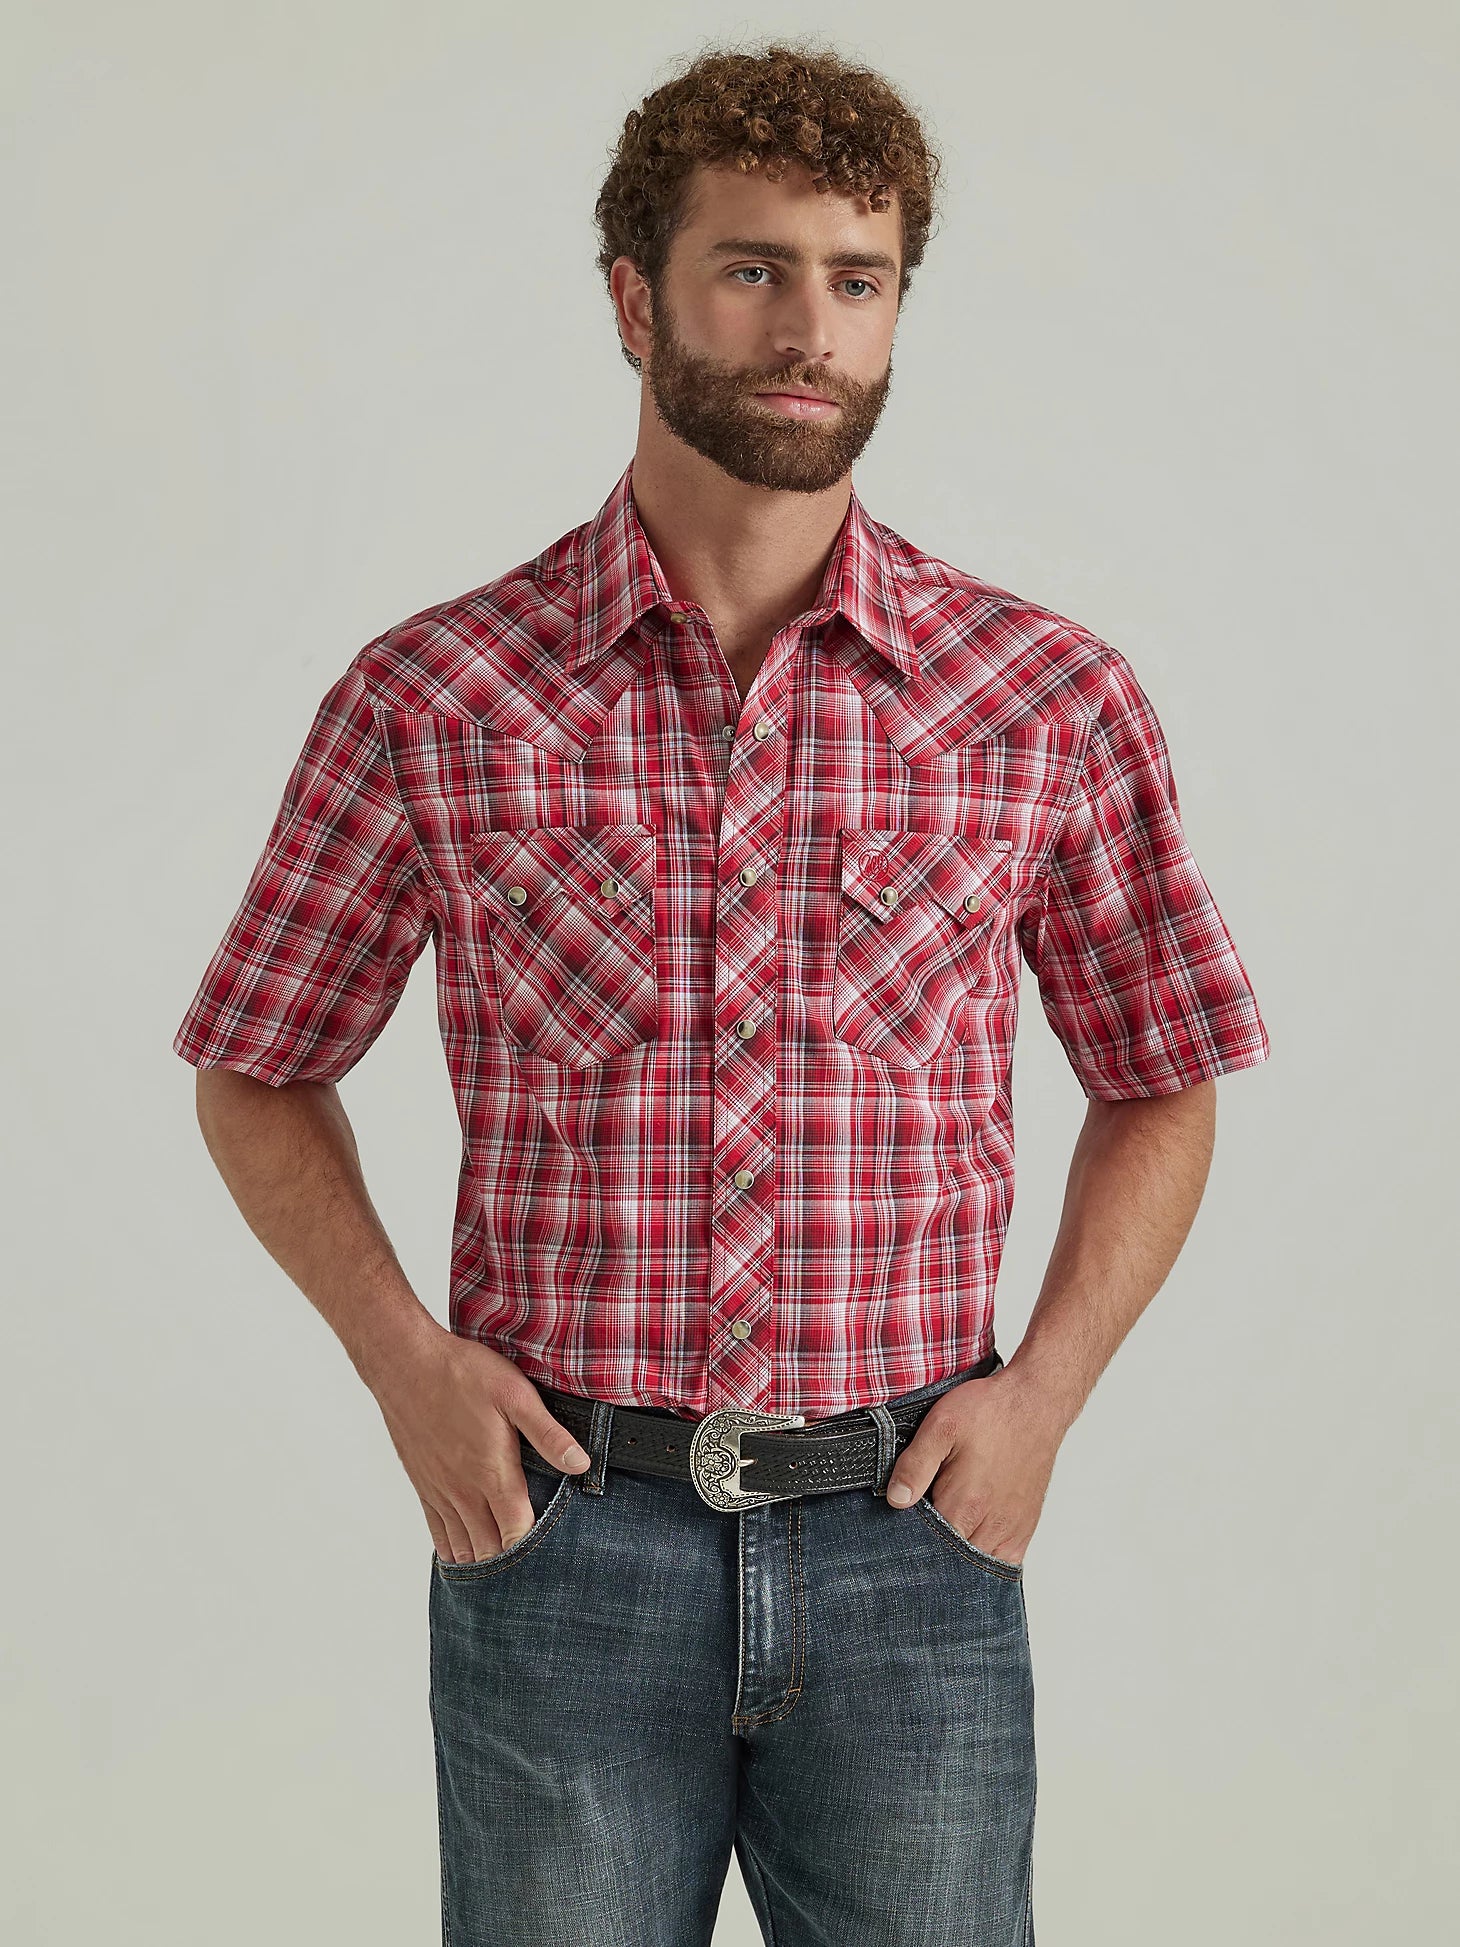 Wrangler Men's Retro Plaid Shirt